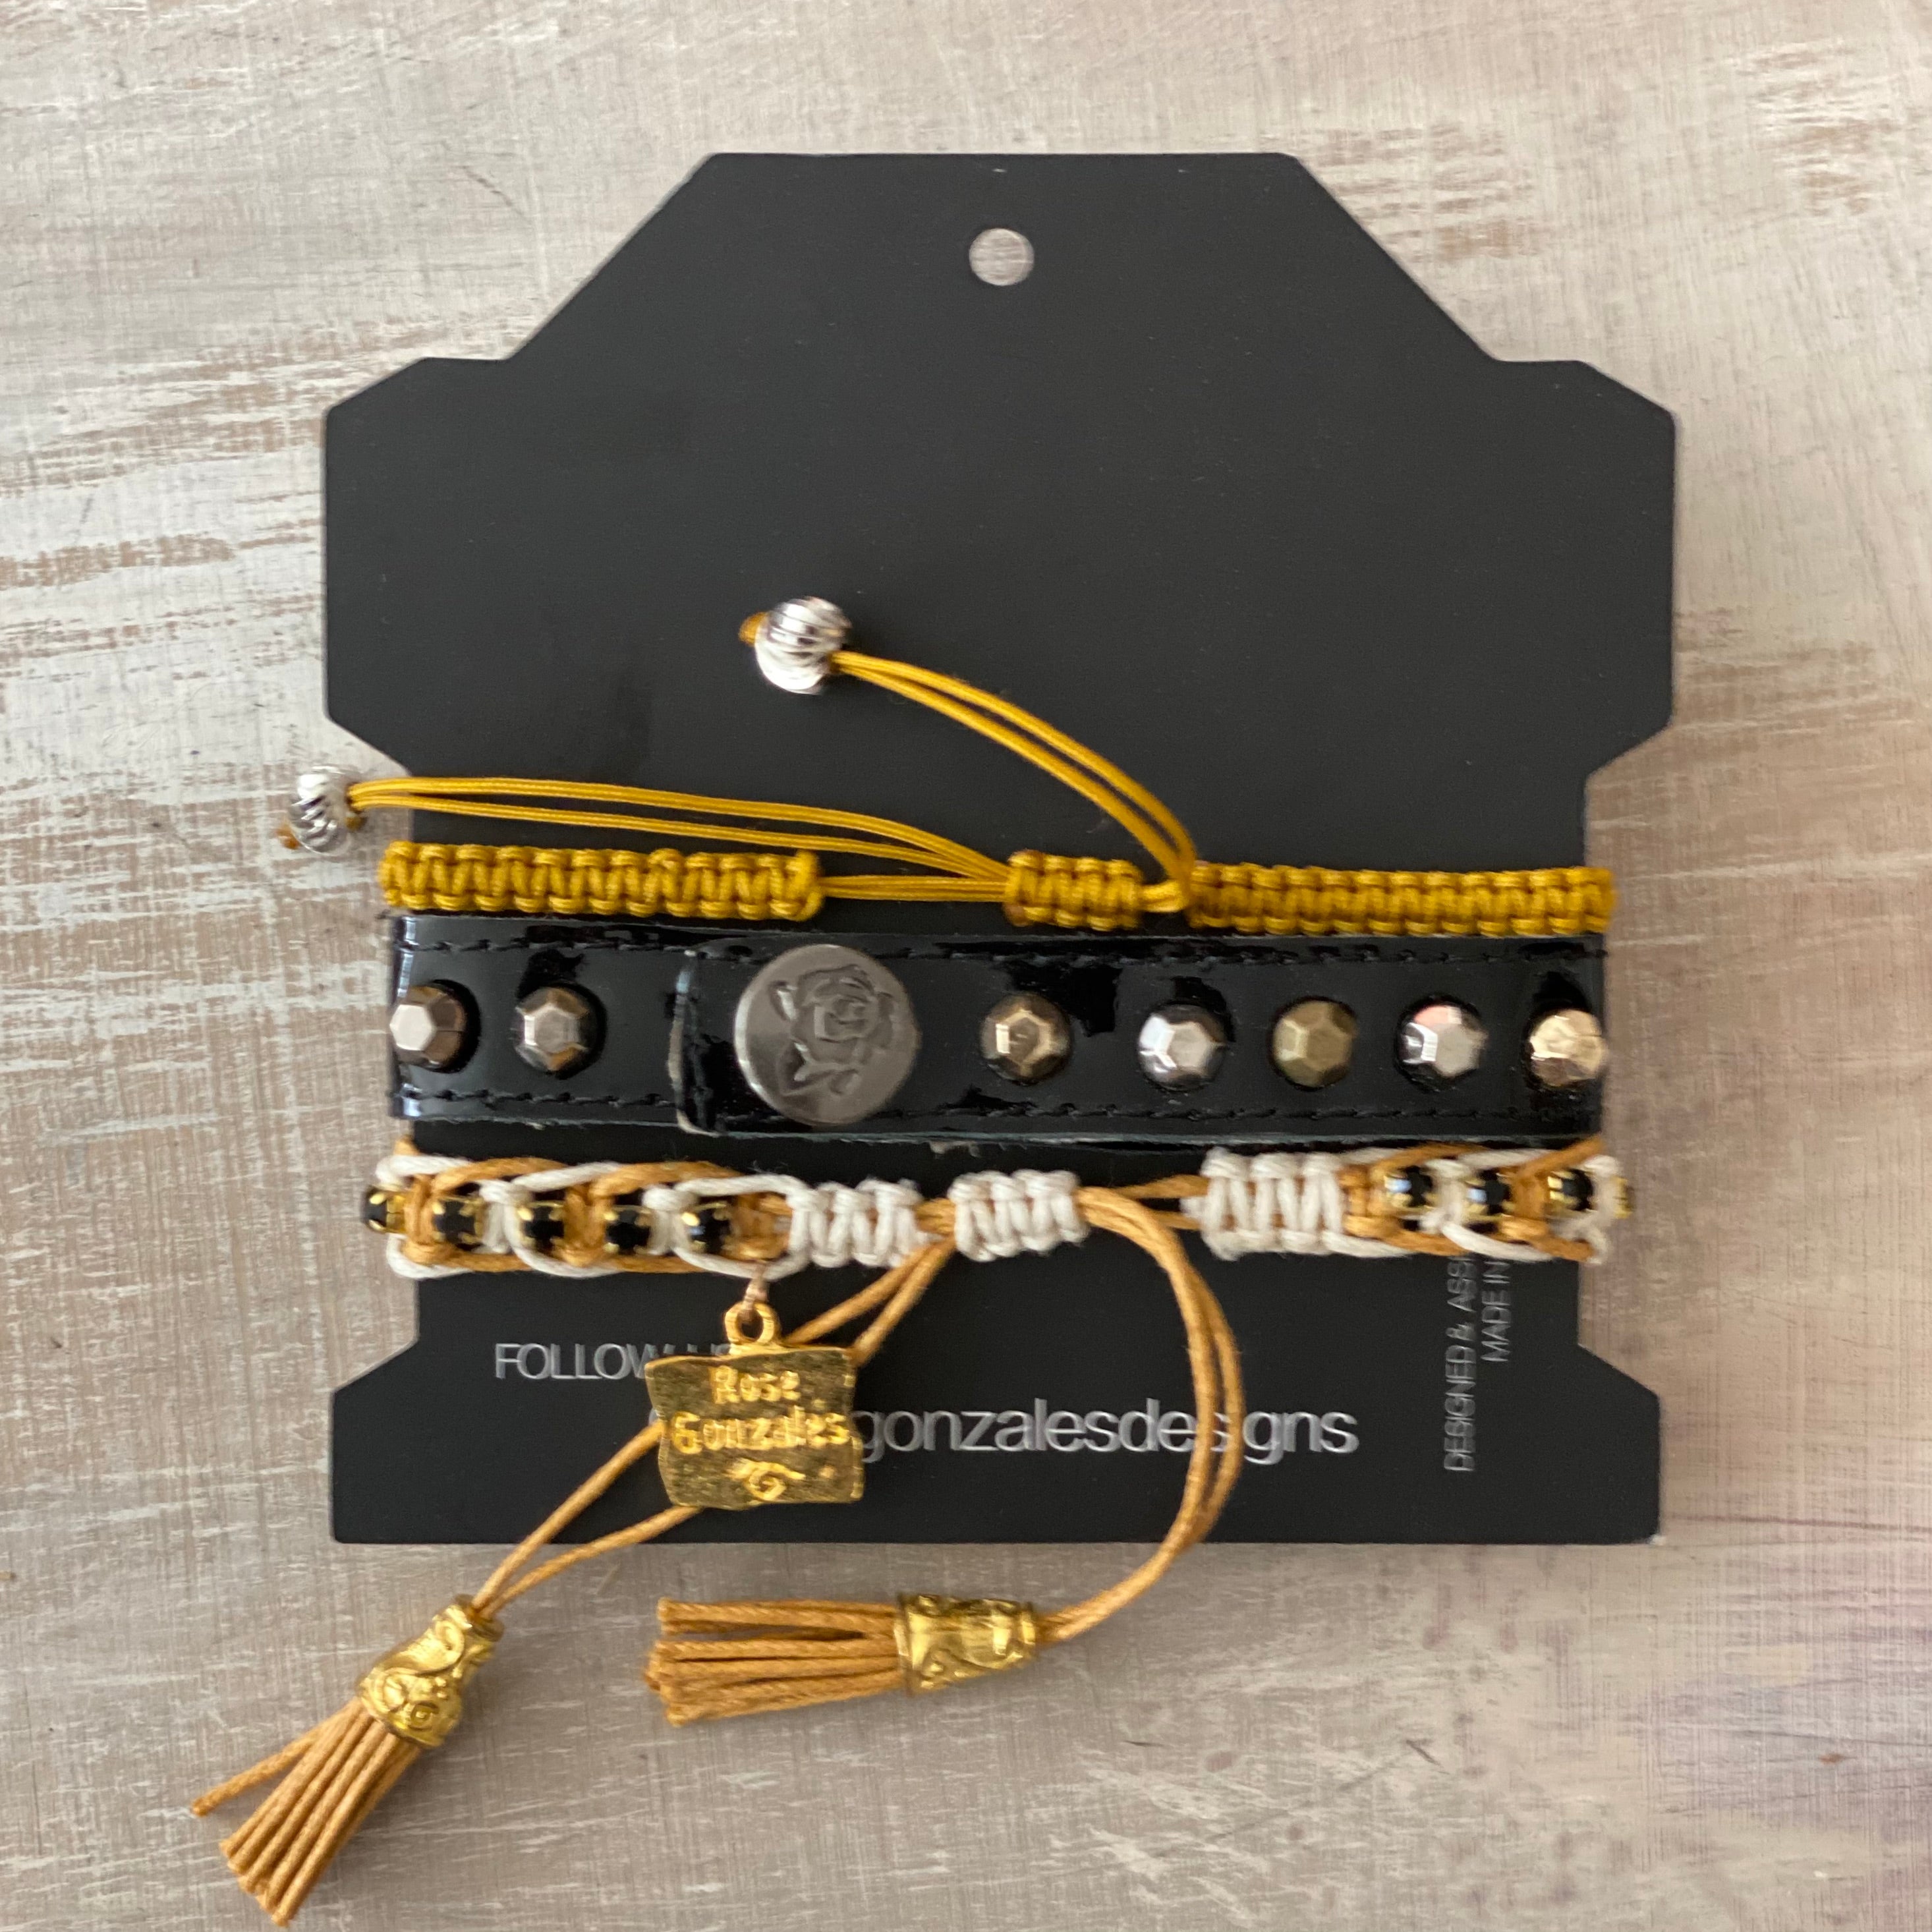 Game Day: Black & Old Gold- Macrame String Bracelet Set